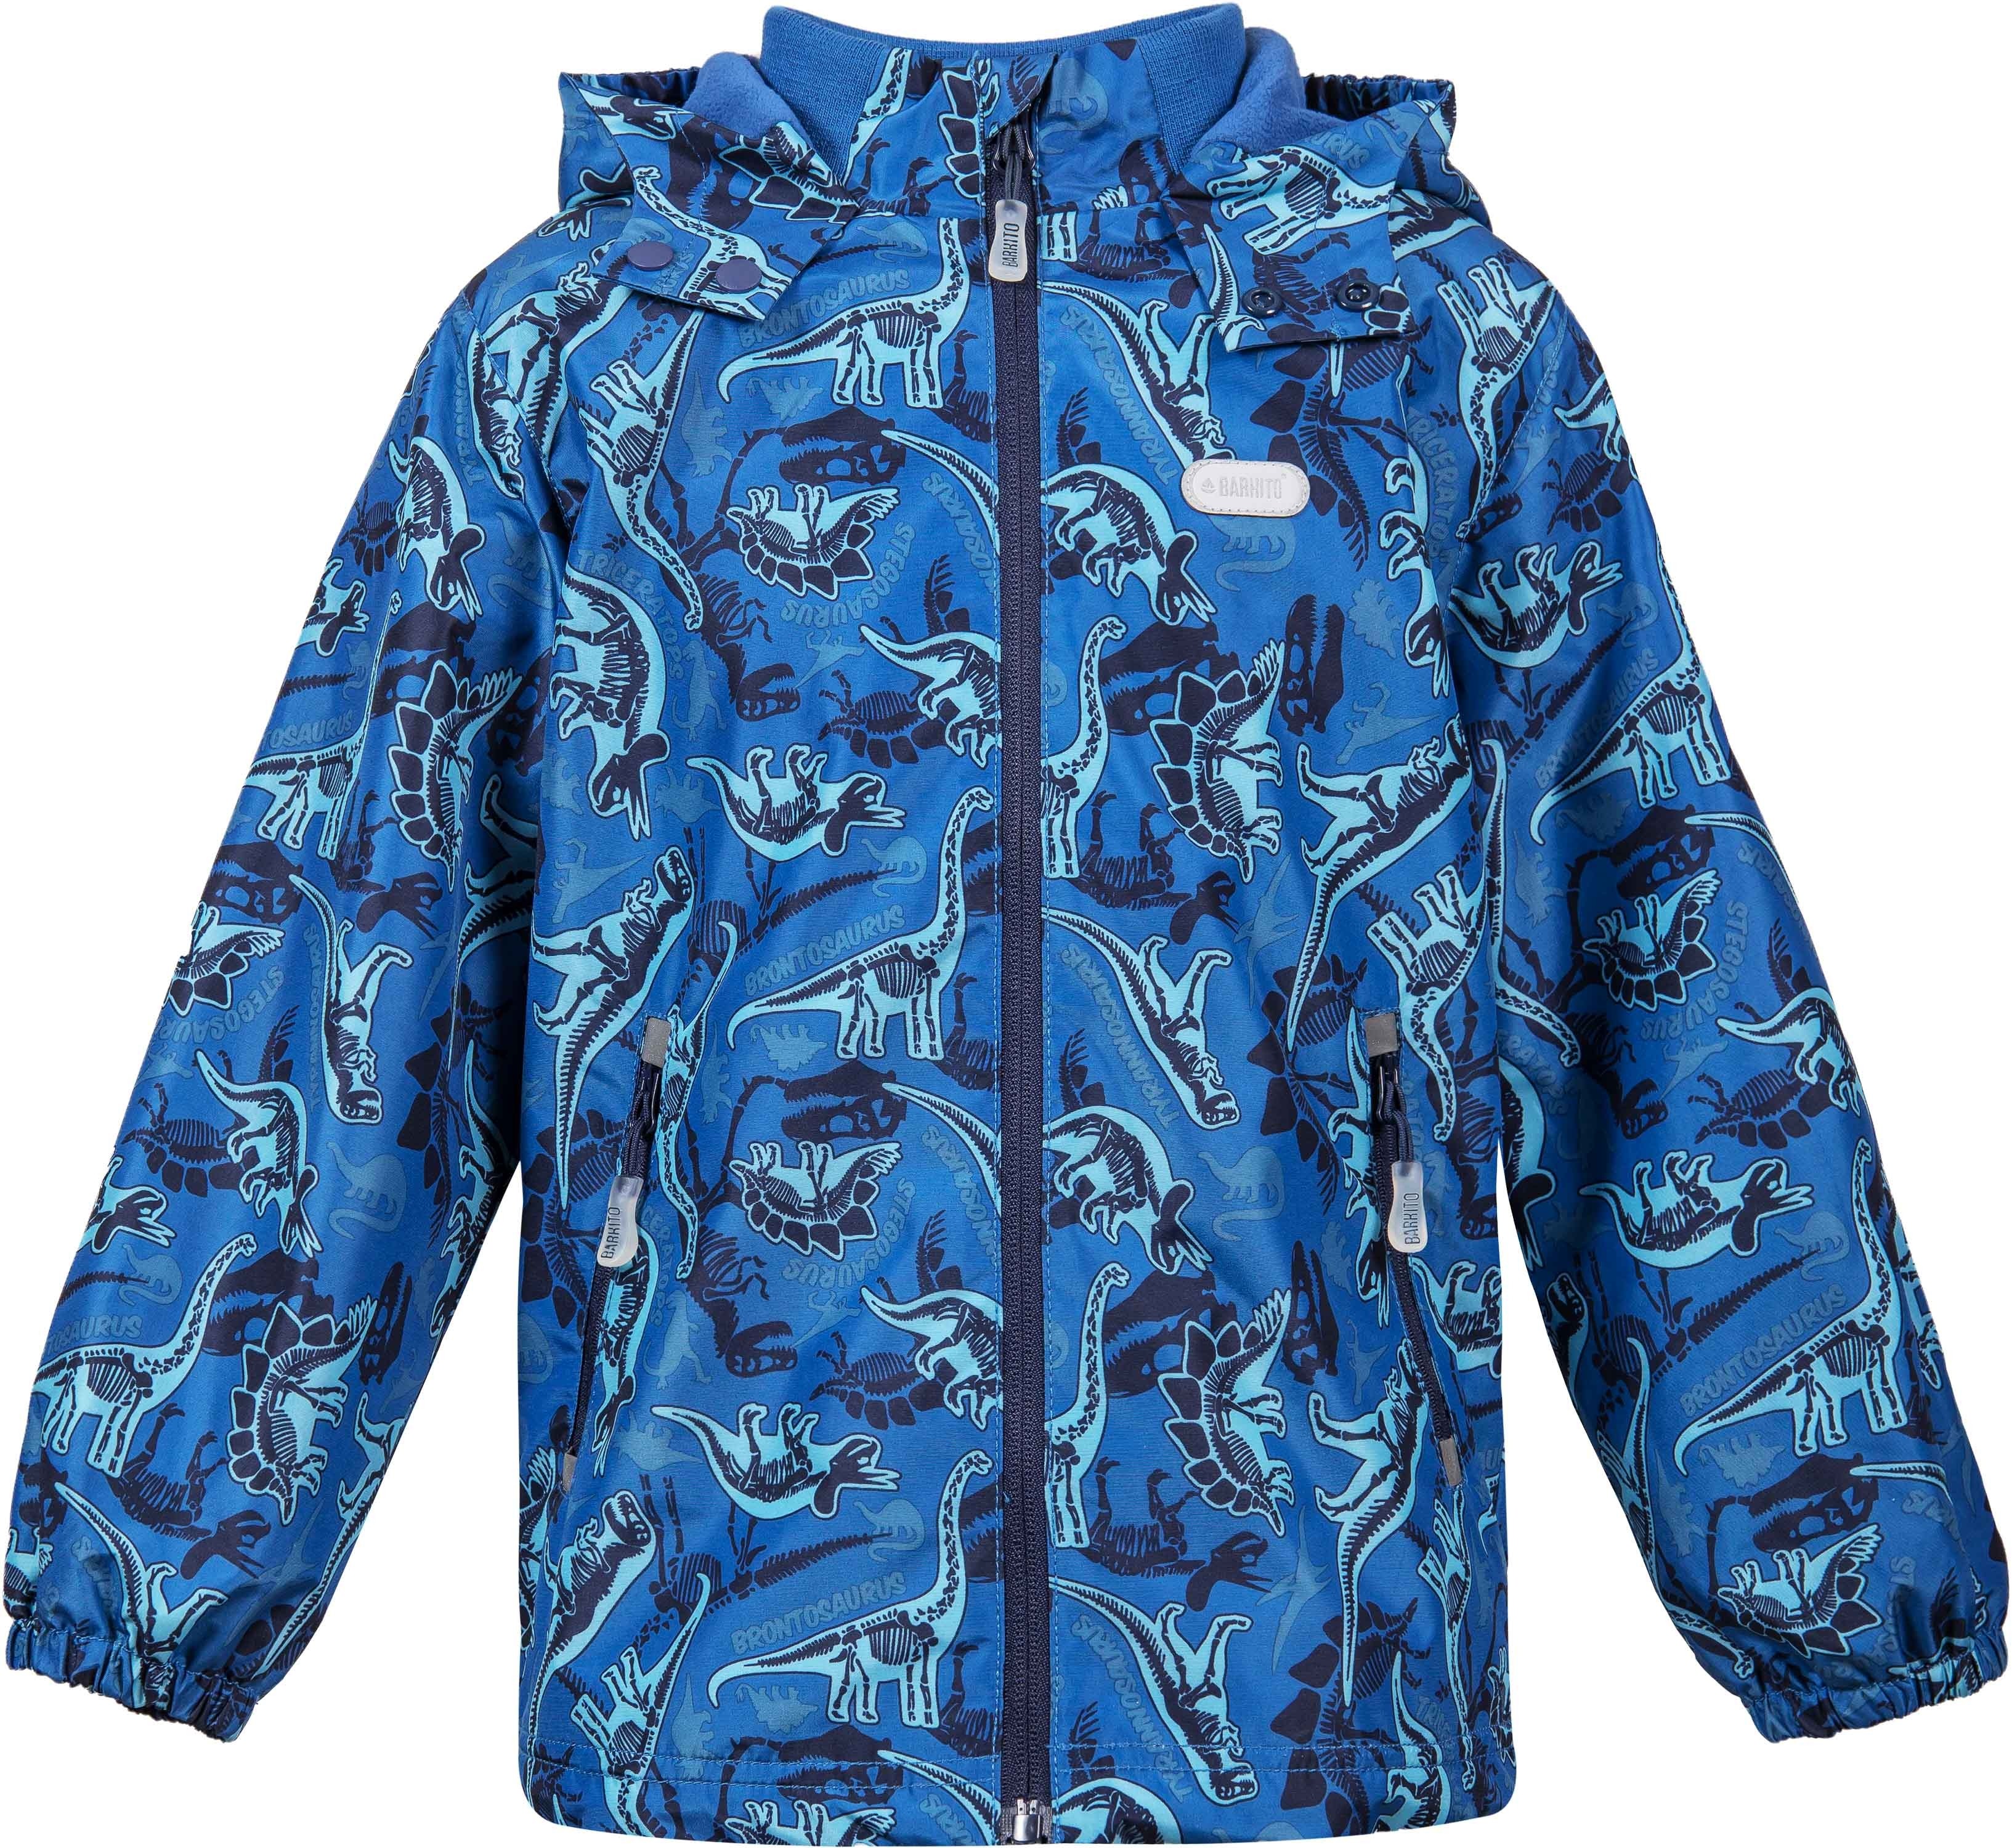 Куртка для мальчика 98. Куртка Баркито для мальчика осень синяя. Куртка Баркито для мальчика. Куртка Futurino для девочек голубая динозавры. Ветровка Баркито 116 для мальчика.